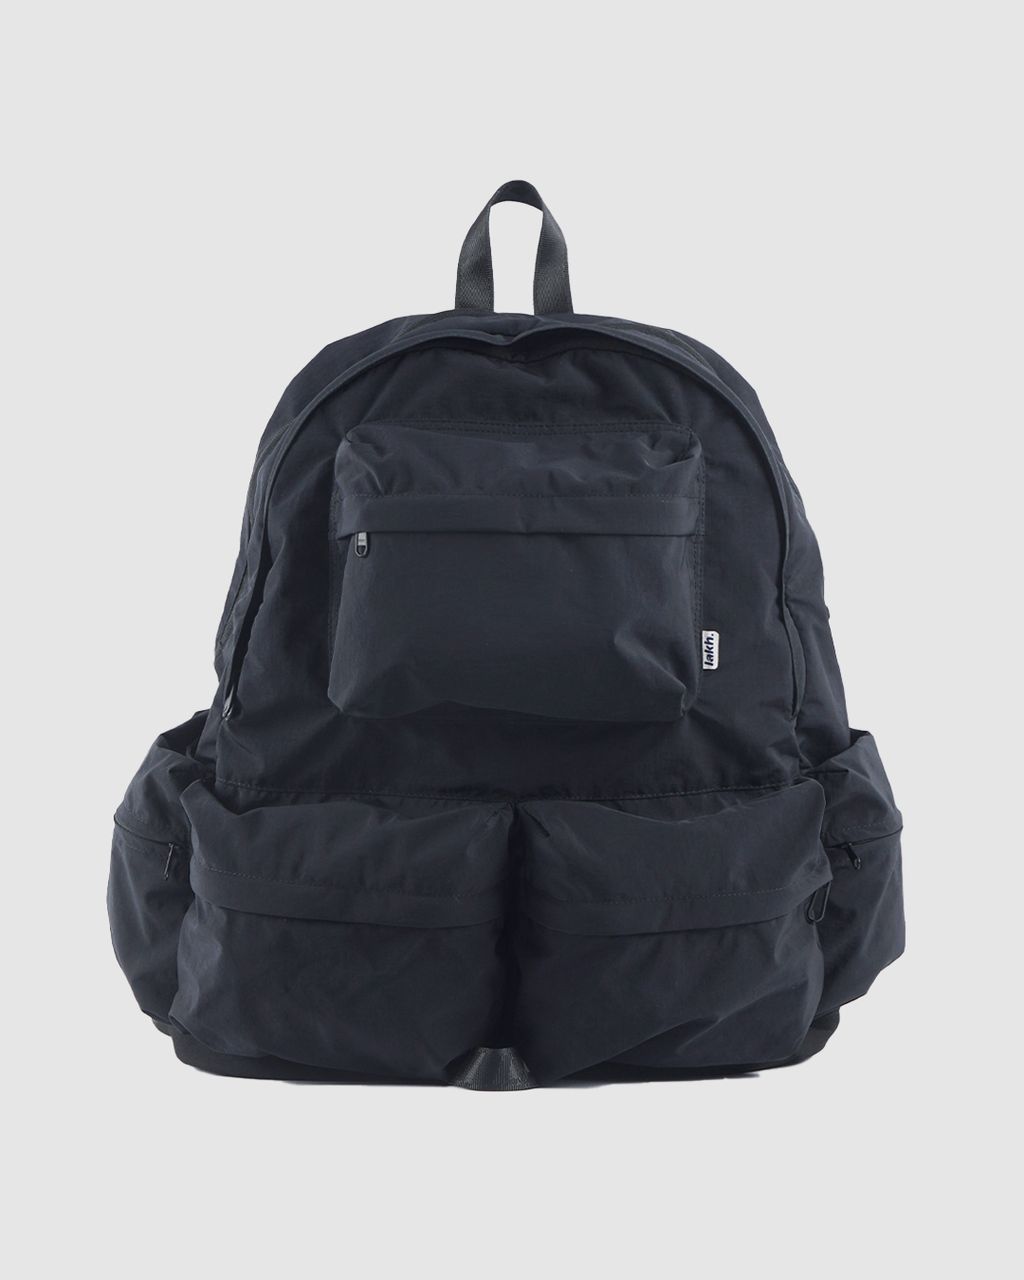 Backpack_Black_1